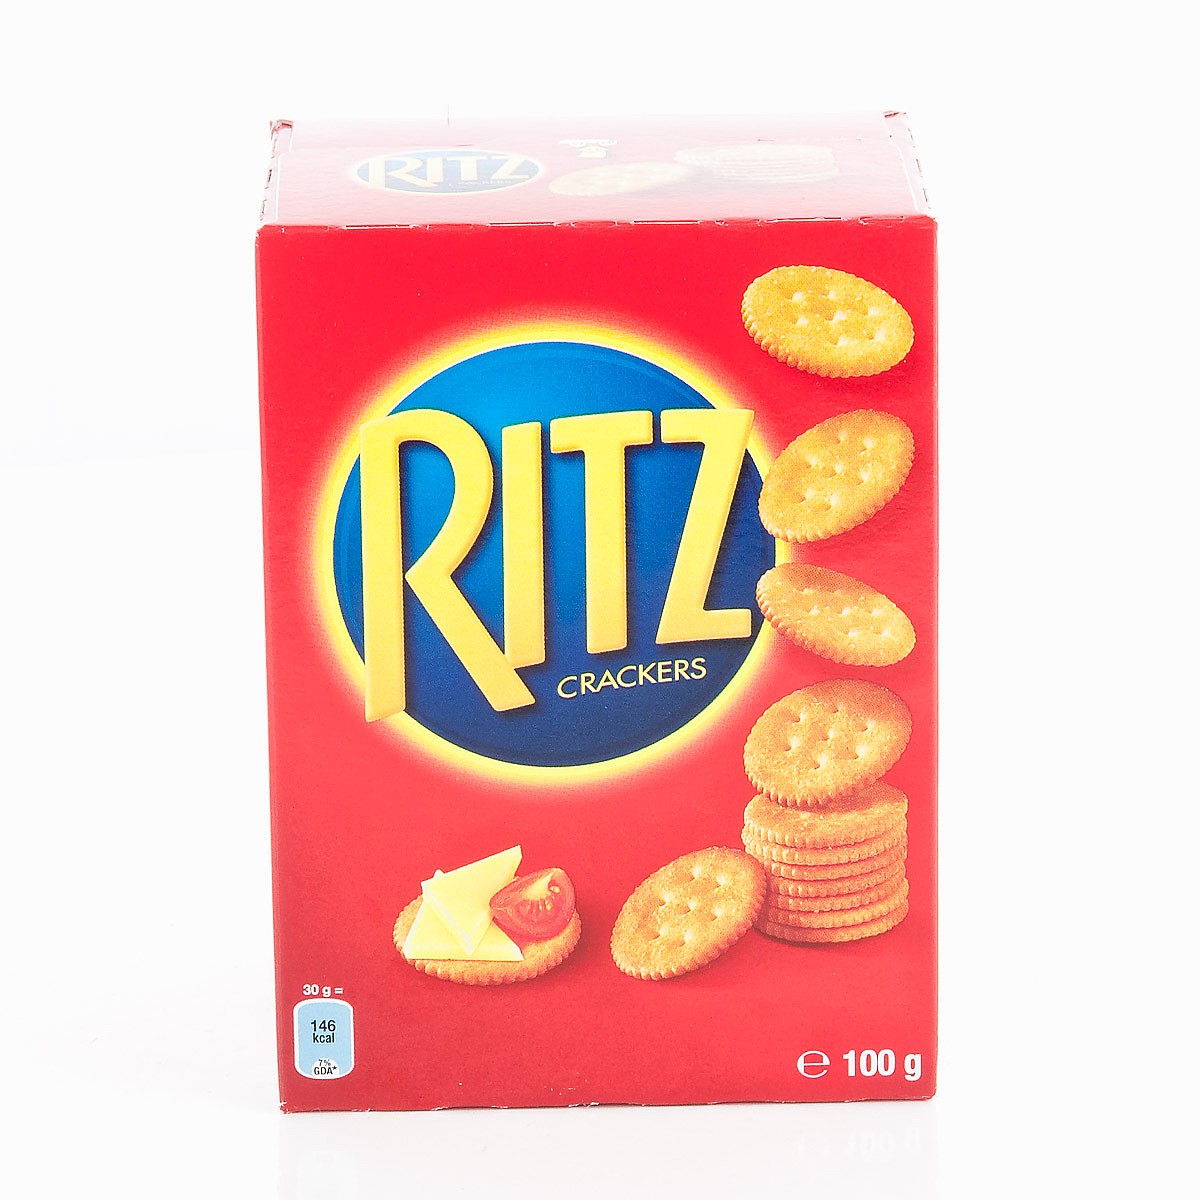 Livraison à domicile Ritz Biscuits apéritifs crackers original, 200g